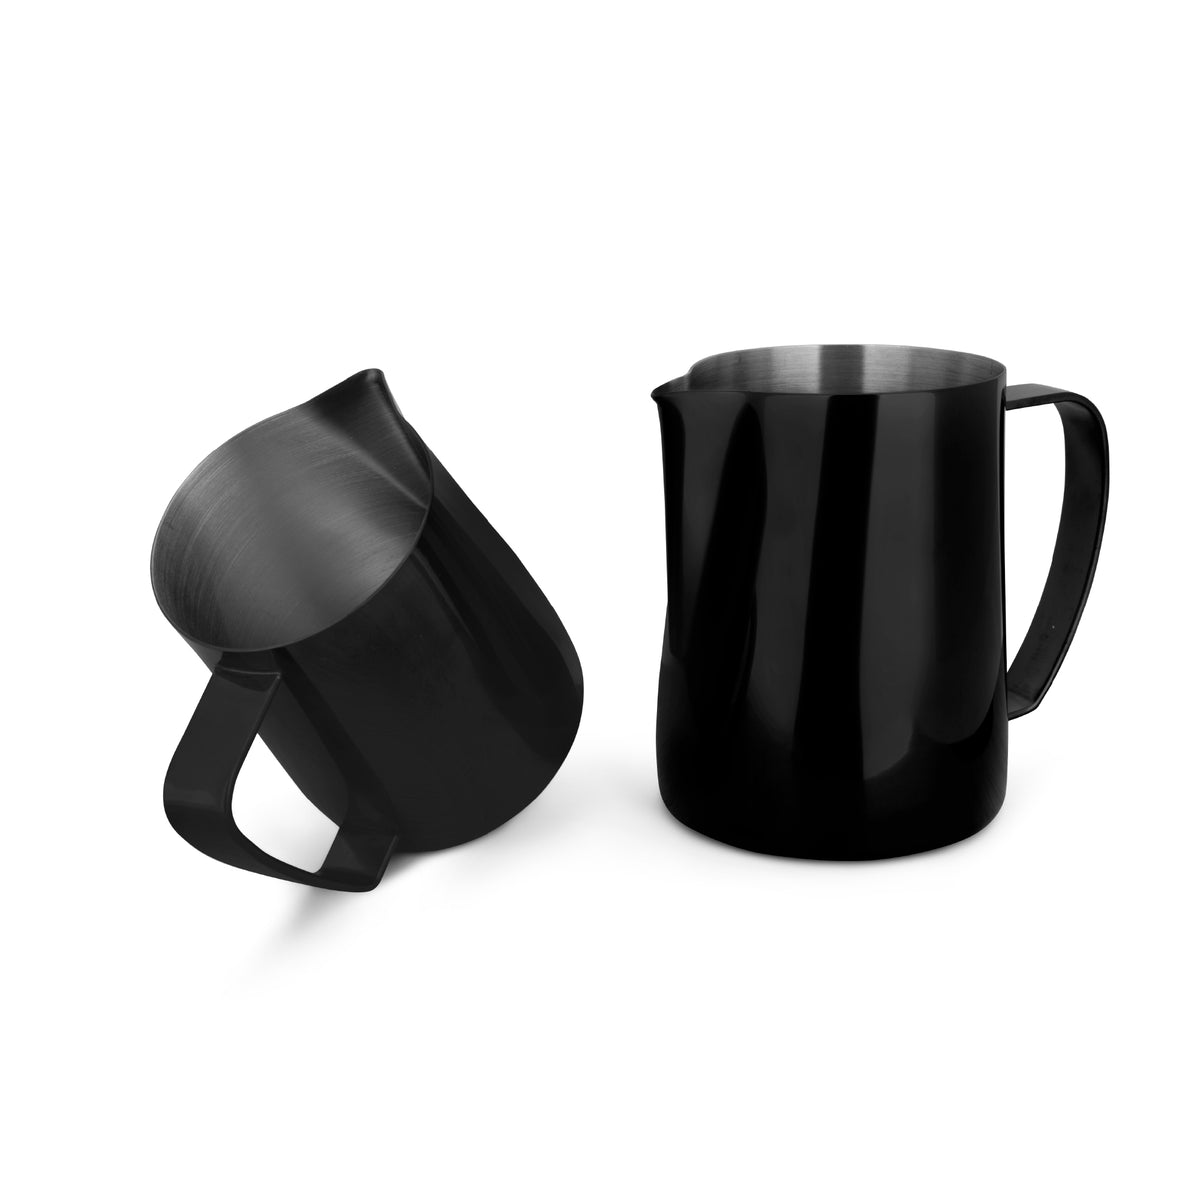 EspressoWorks Stainless Steel Milk Frothing Jug - Black (350ml and 600ml)